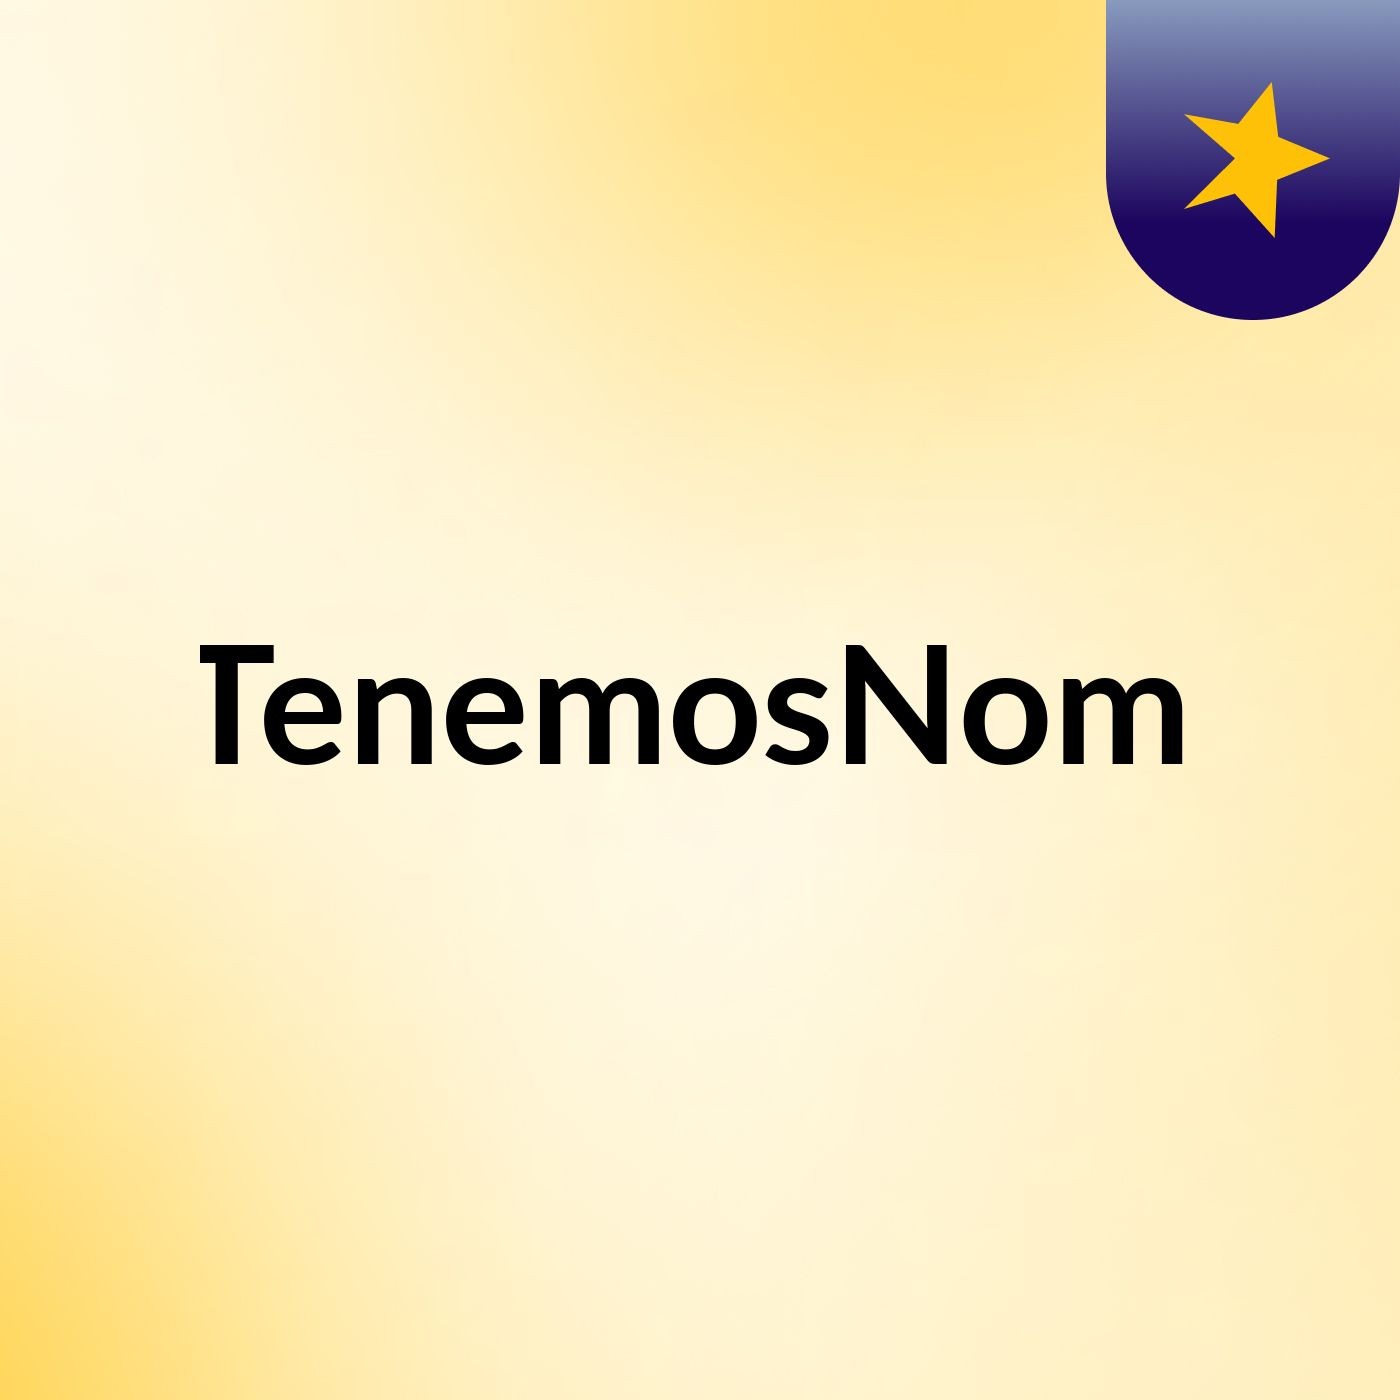 NoTenemosNombre2